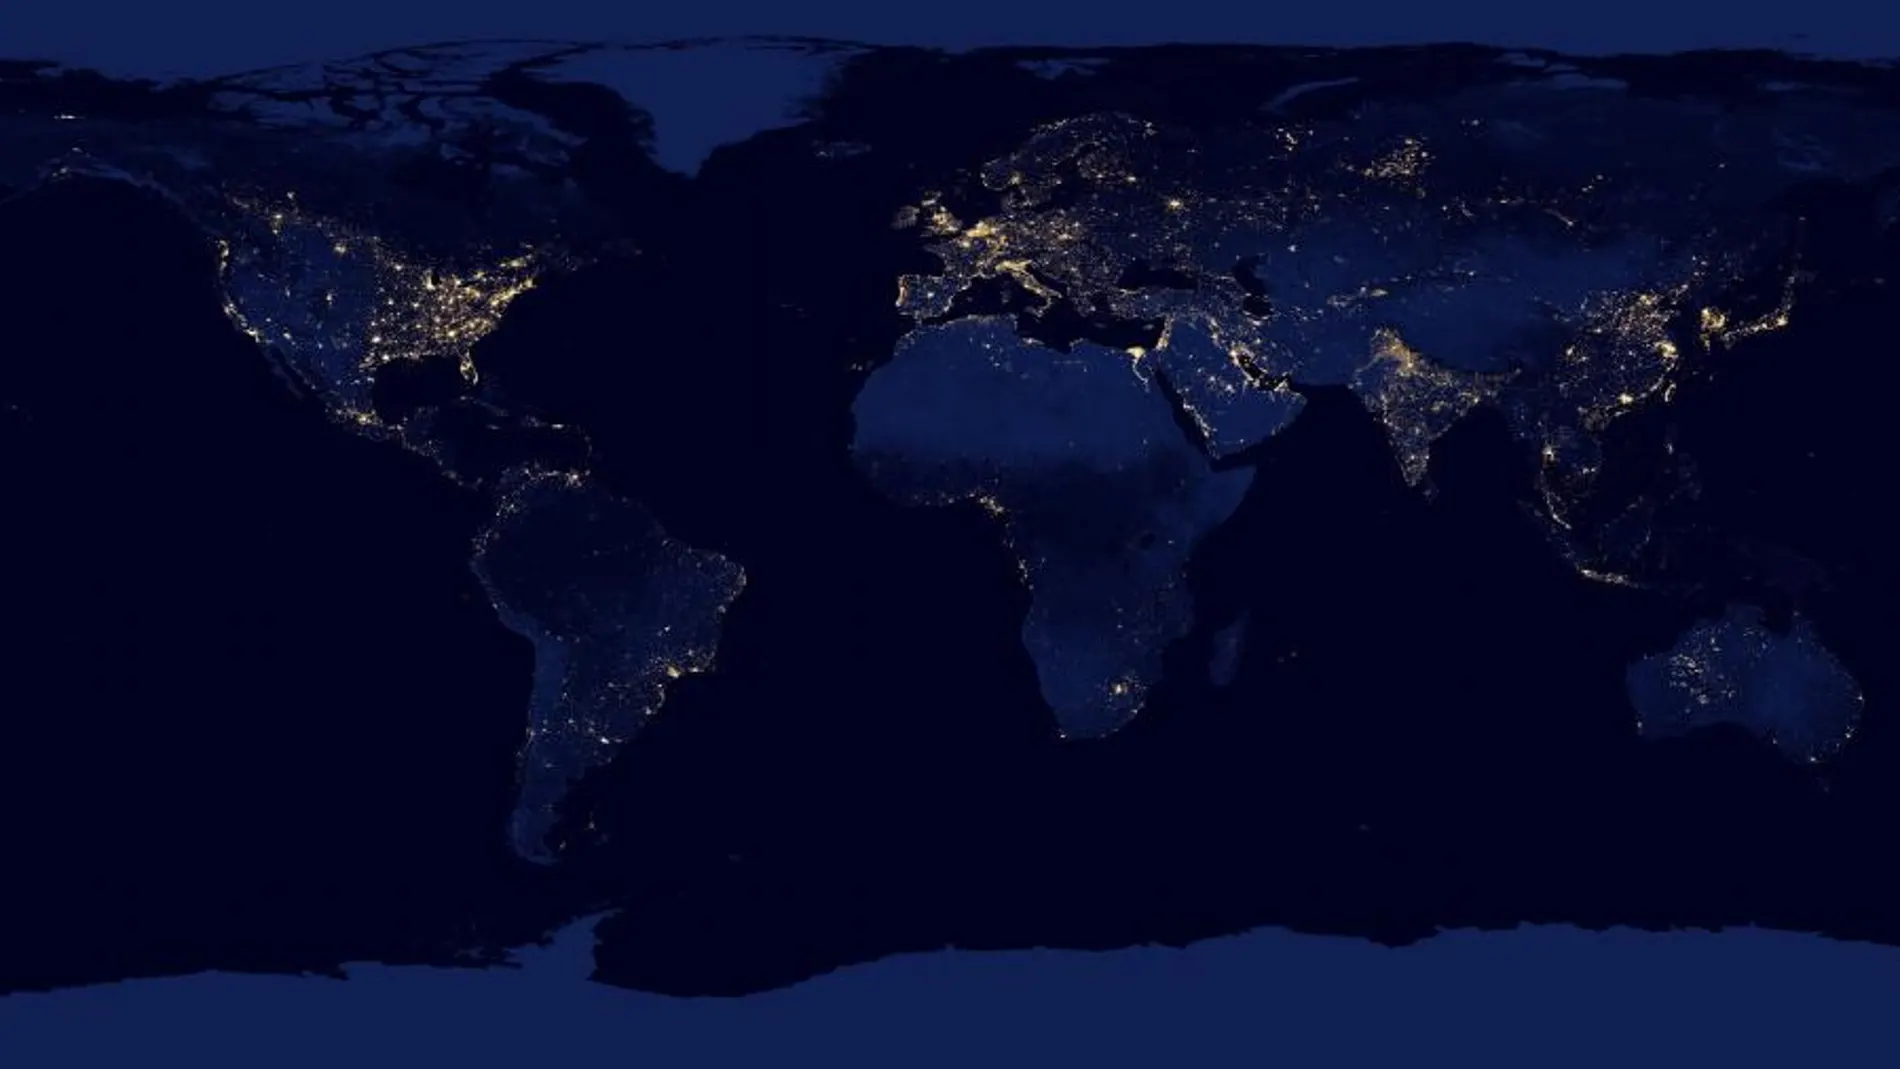 La iluminación nocturna revela el diferente grado de desarrollo de unos países y otros. También permite observar el favoritismo regional de los líderes con su tierra.